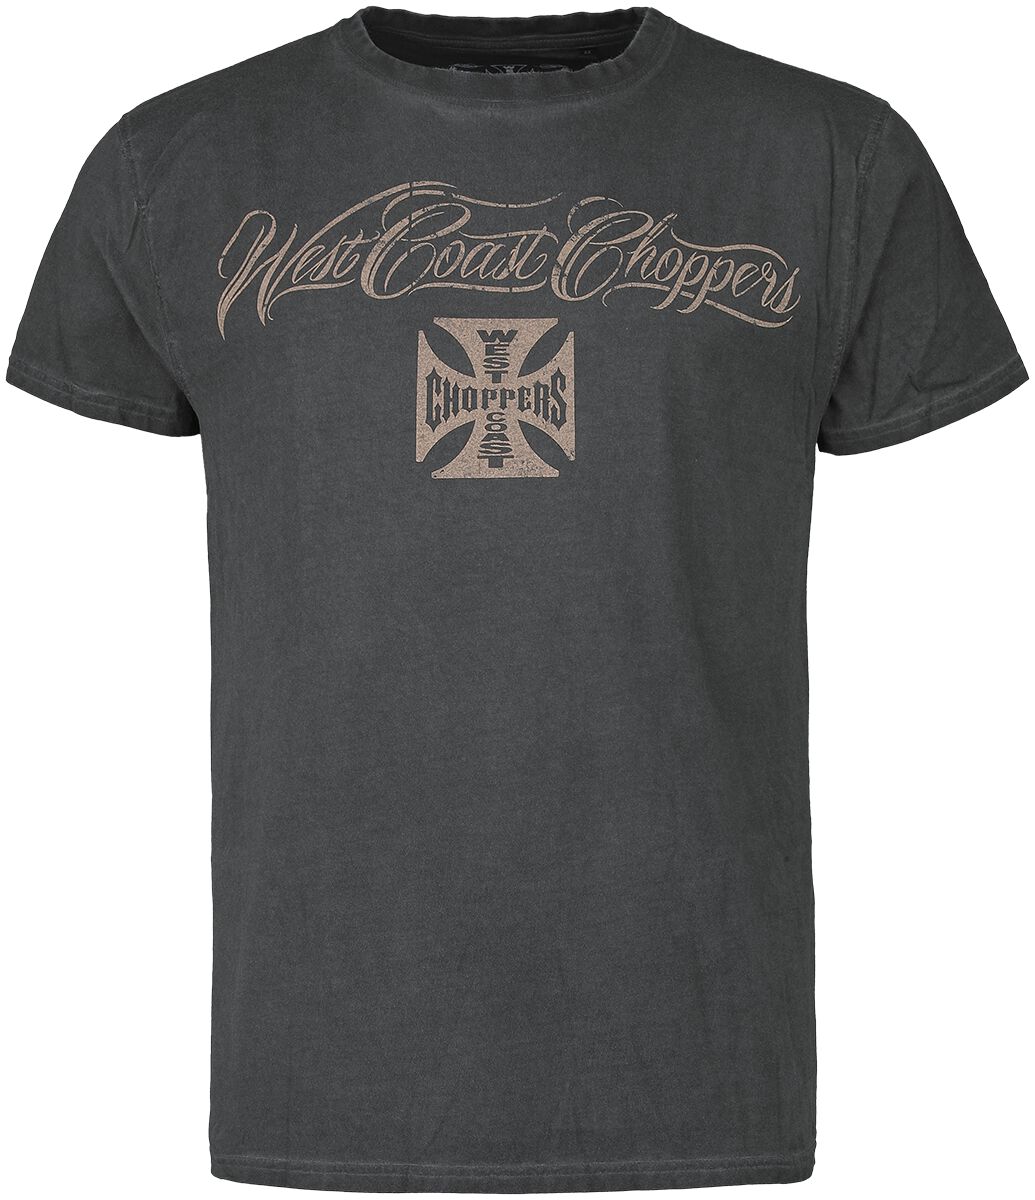 West Coast Choppers T-Shirt - Eagle Crest - S bis 4XL - für Männer - Größe XL - anthrazit